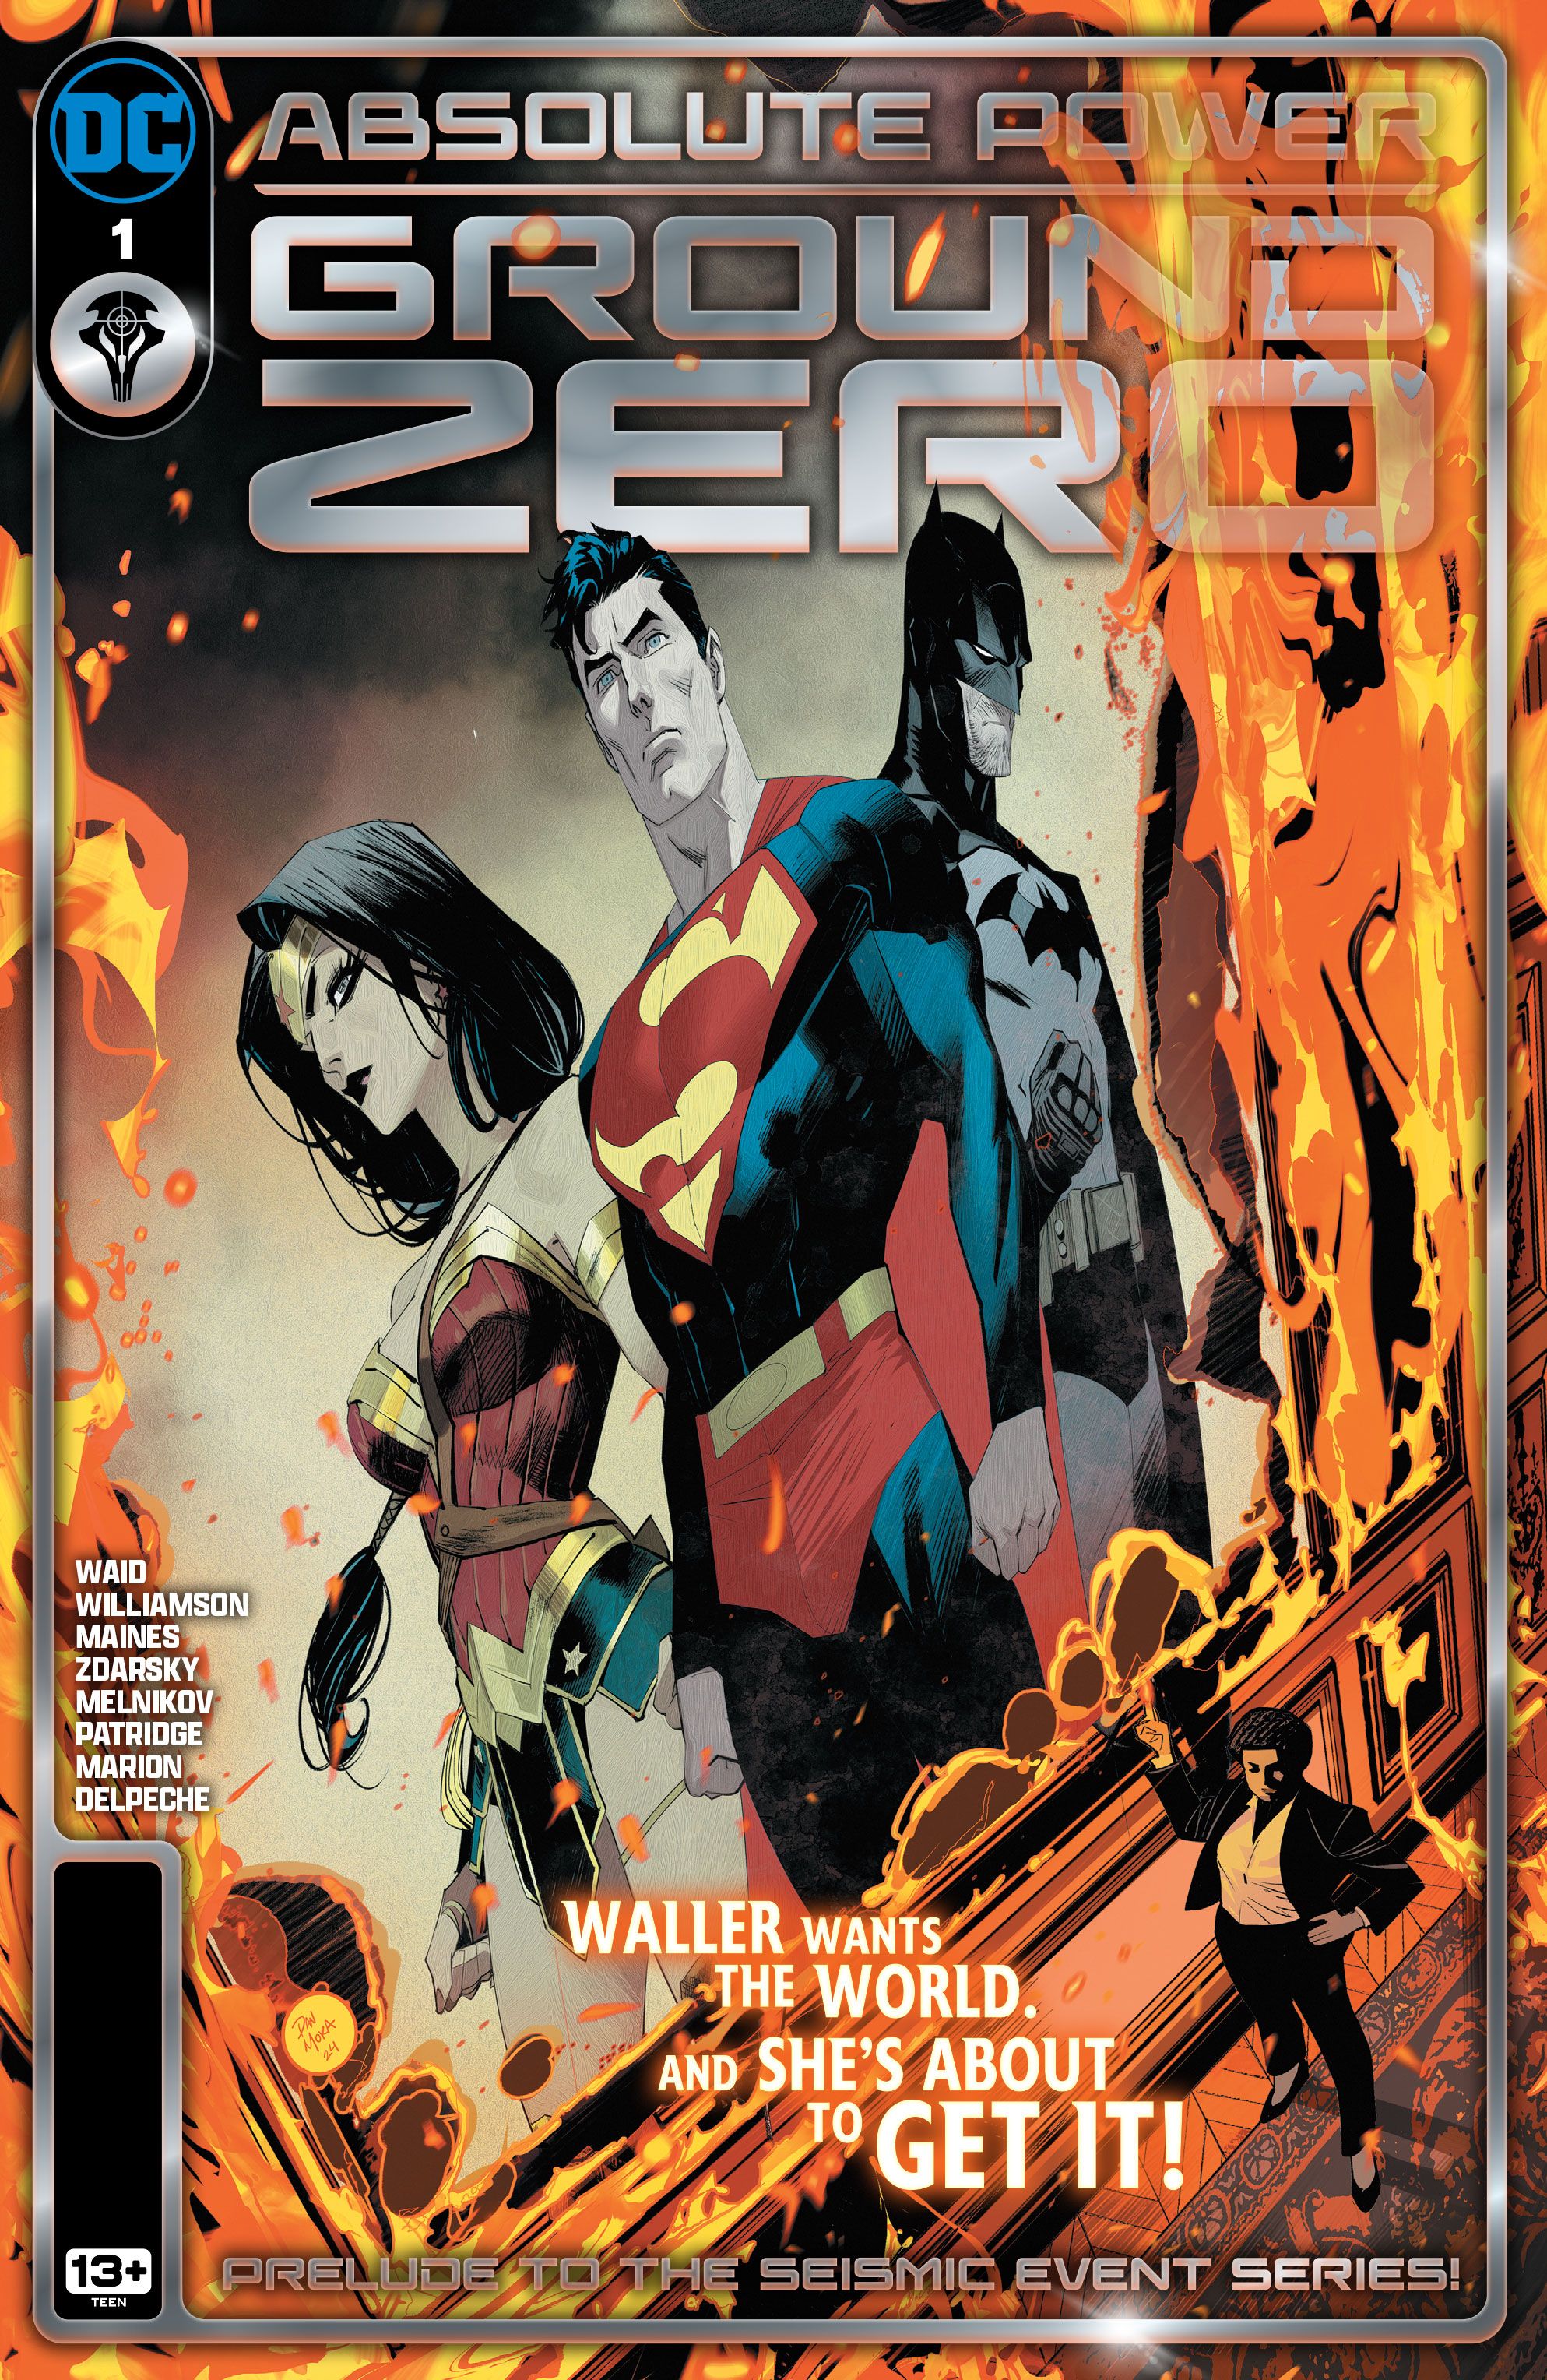 Capa principal do Absoluter Power Ground Zero 1: Amanda Waller em pé ao lado de um retrato em chamas do Batman, Superman e Mulher-Maravilha.